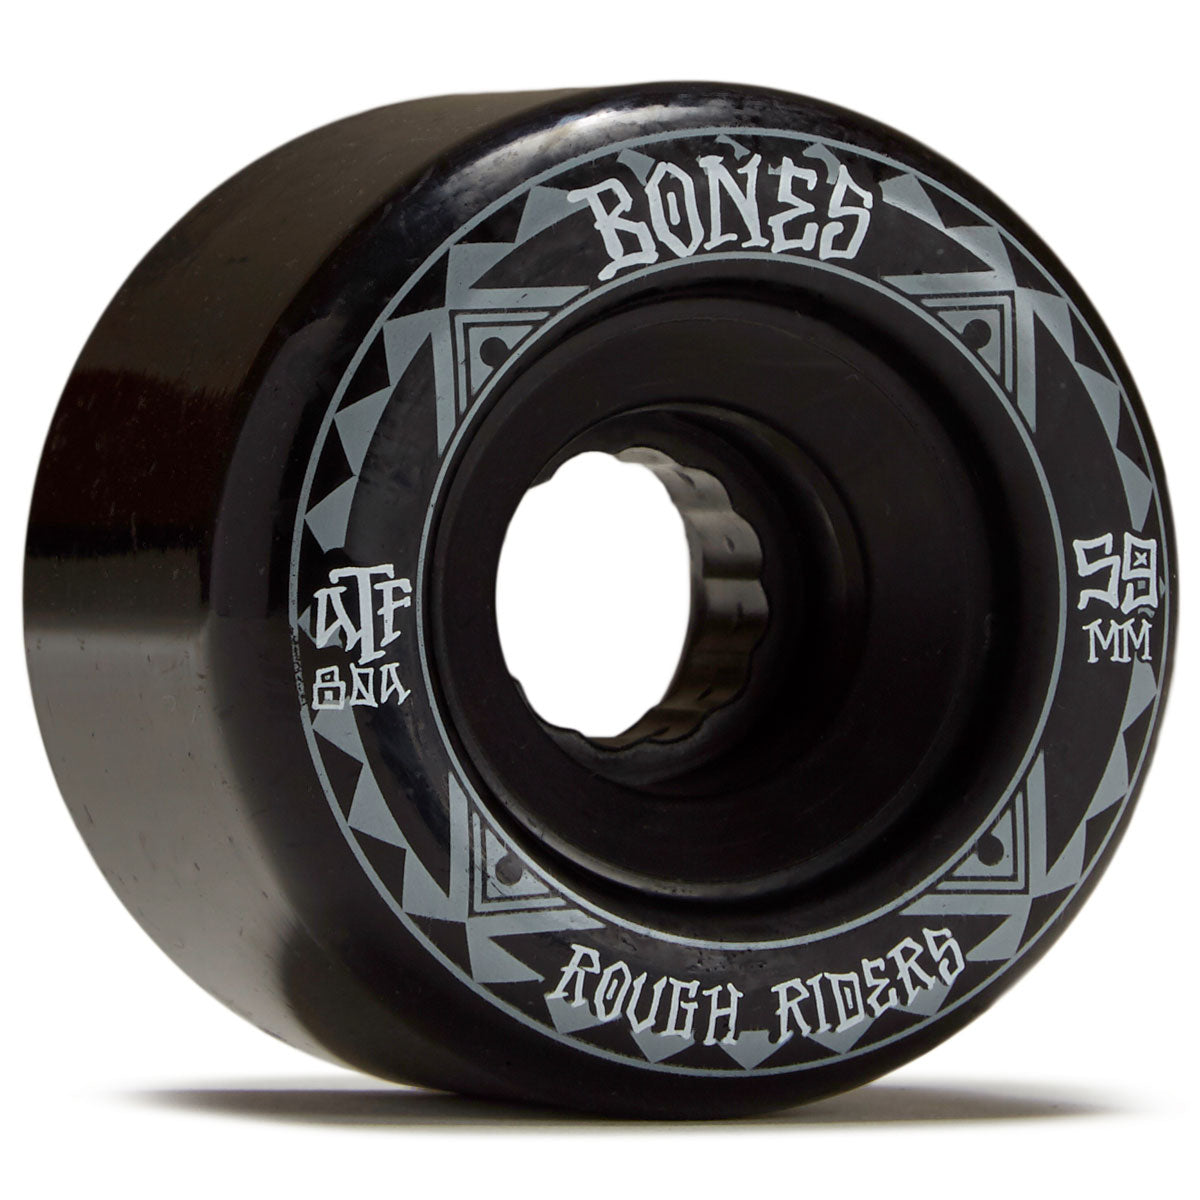 Bones Rough Riders Runners Skateboard Wheels - Black - 59mm image 1